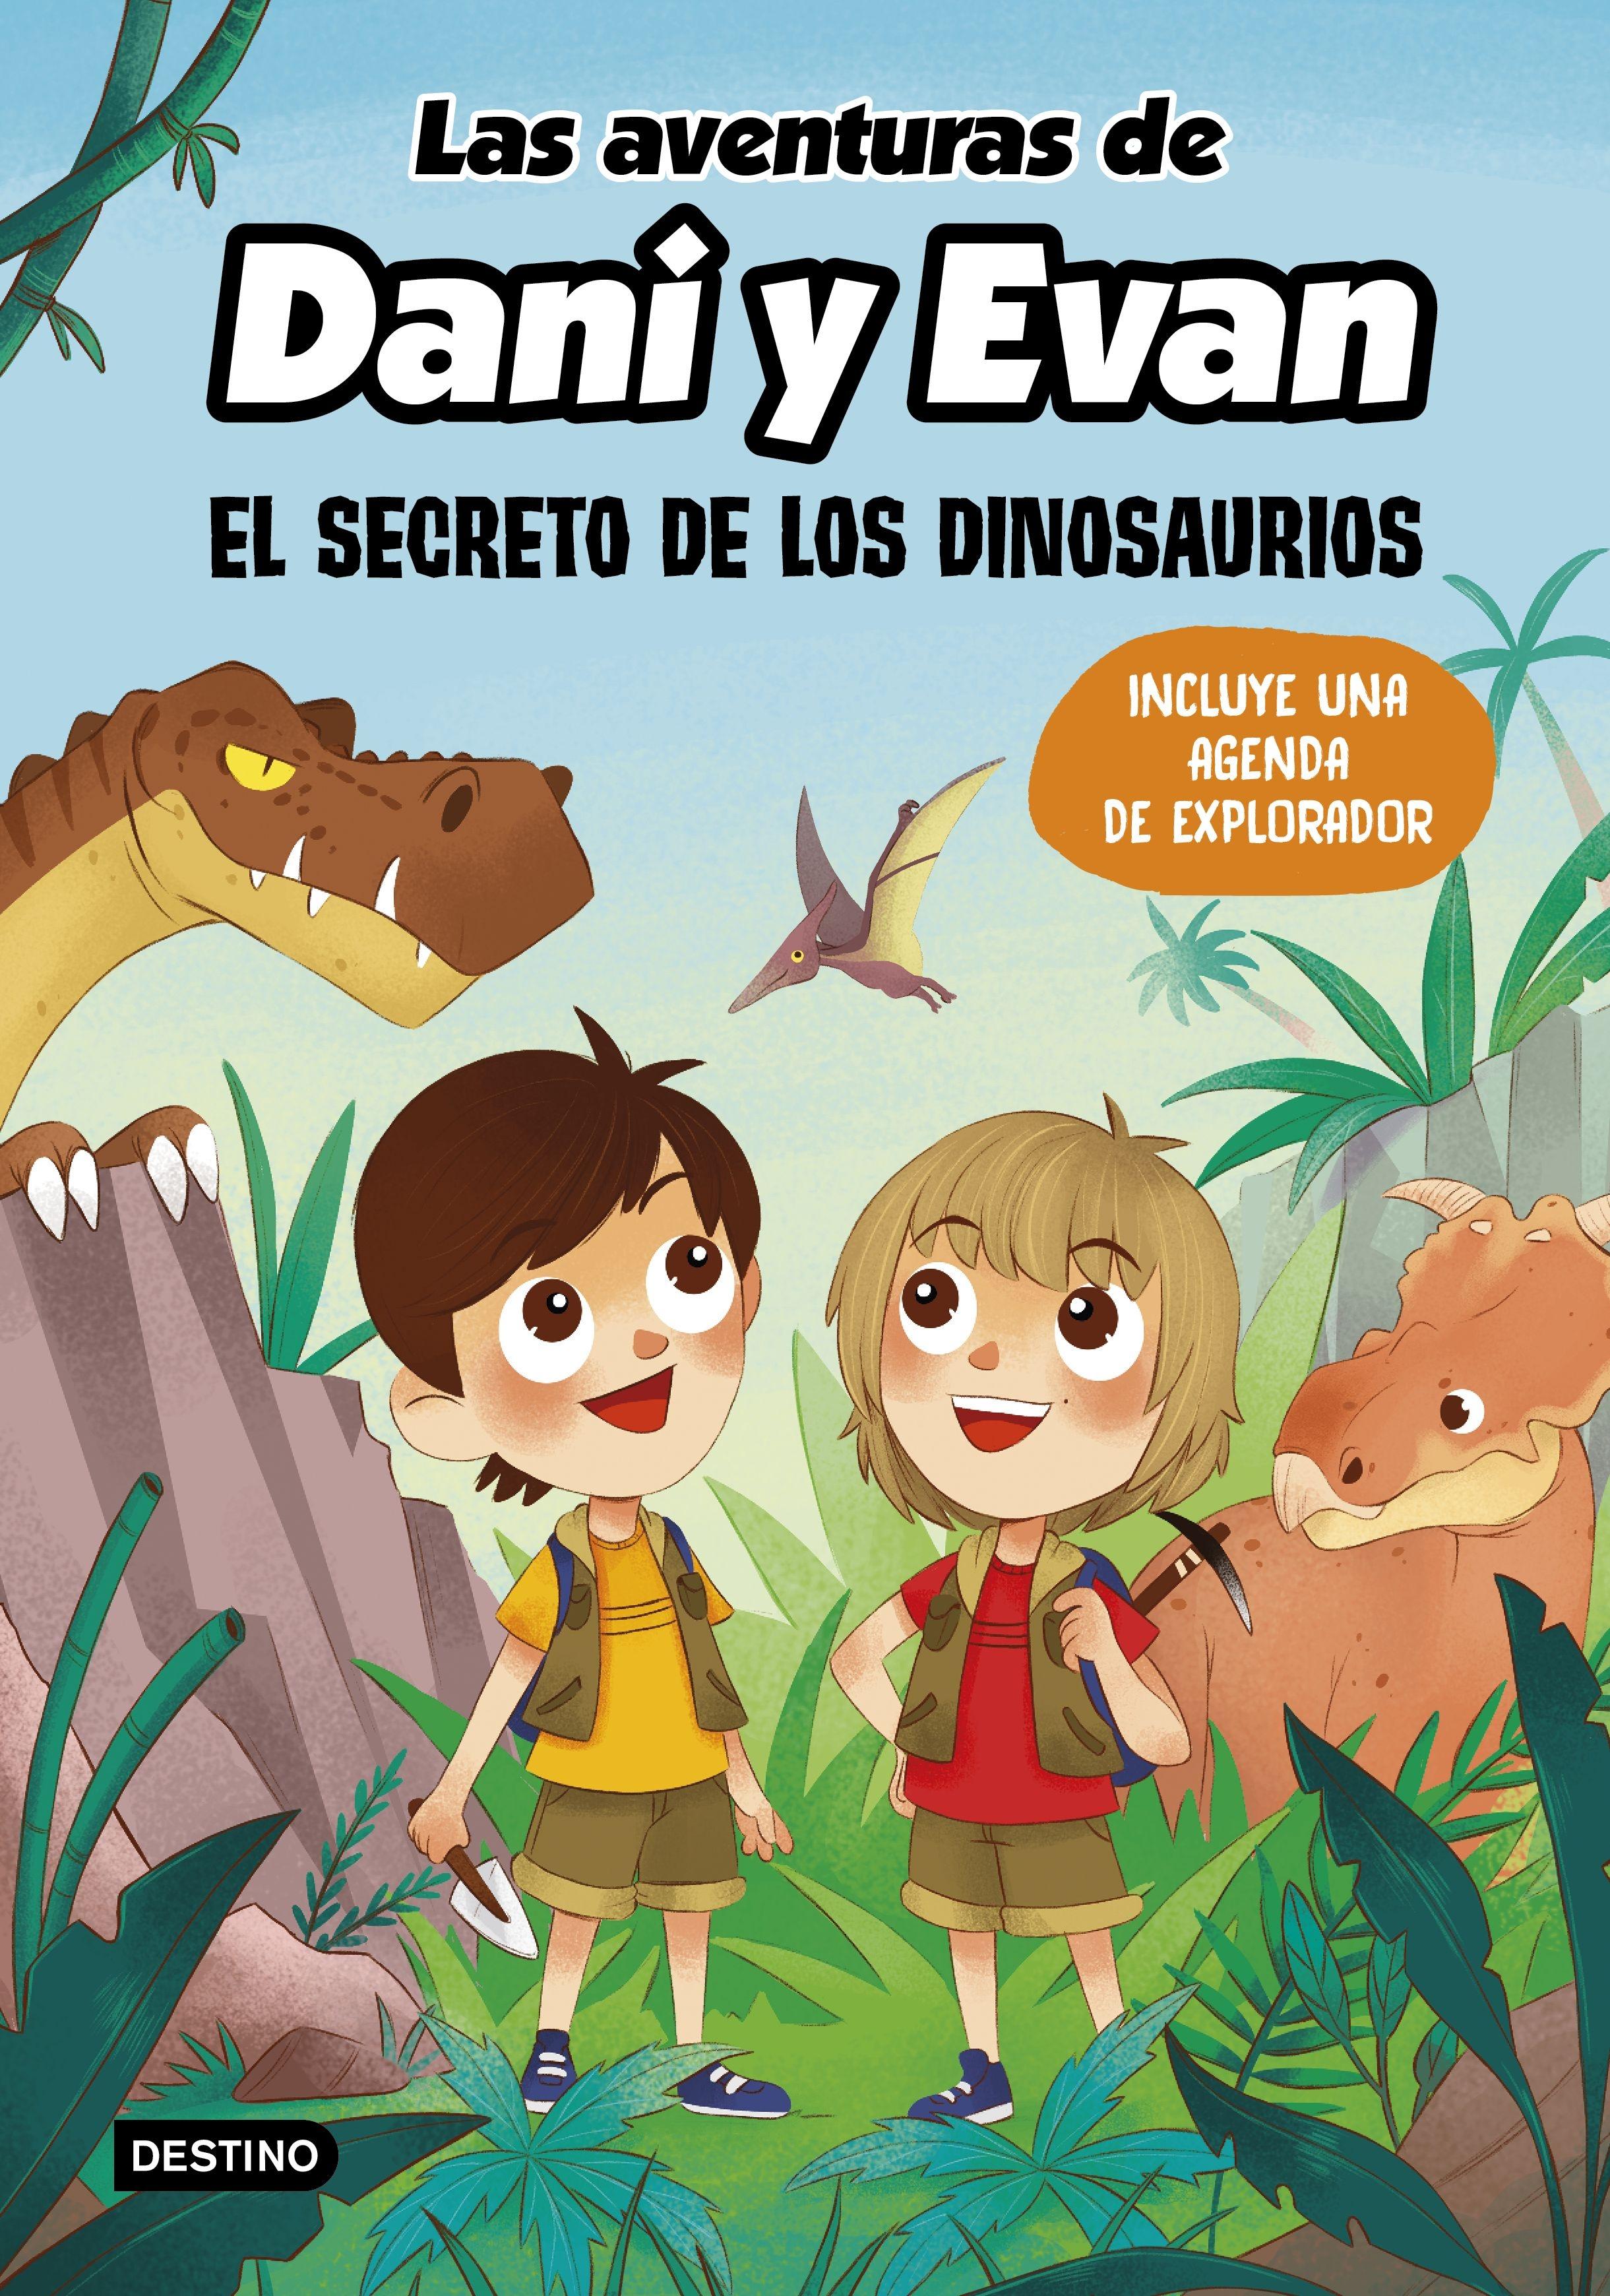 Las aventuras de Dani y Evan. El secreto de los dinosaurios "Incluye una agenda de explorador"